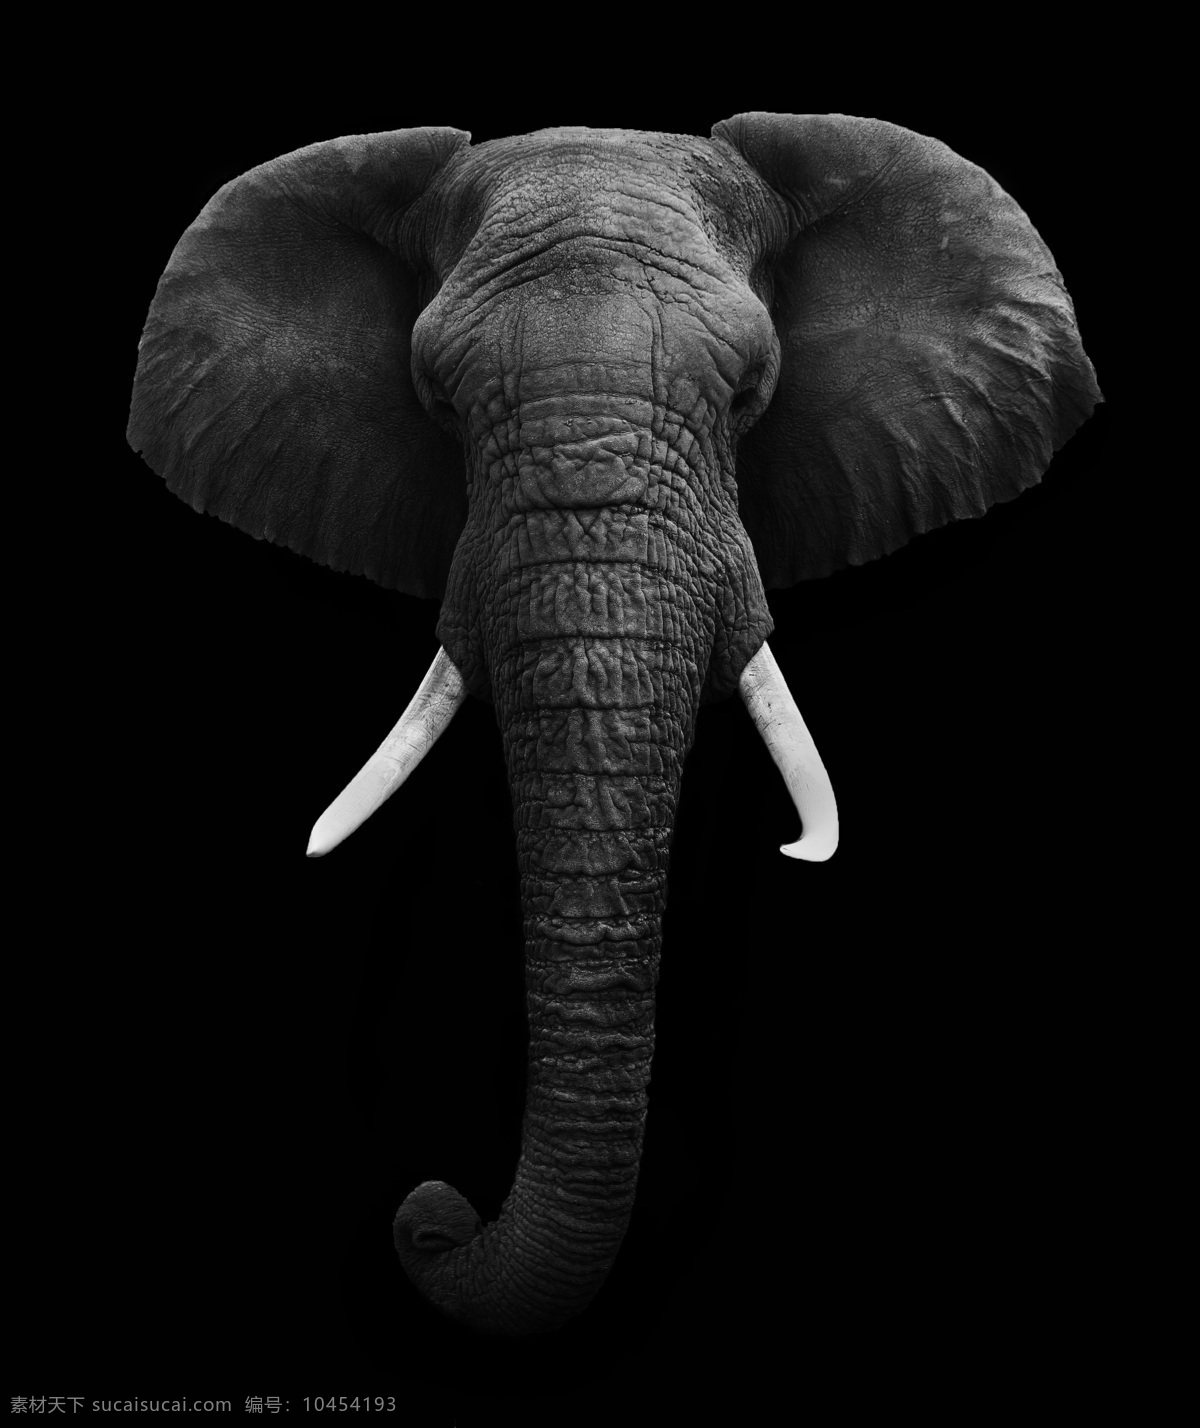 野生大象摄影 大象 象 野生动物 动物世界 陆地动物 生物世界 非洲大象 其他类别 生活百科 黑色